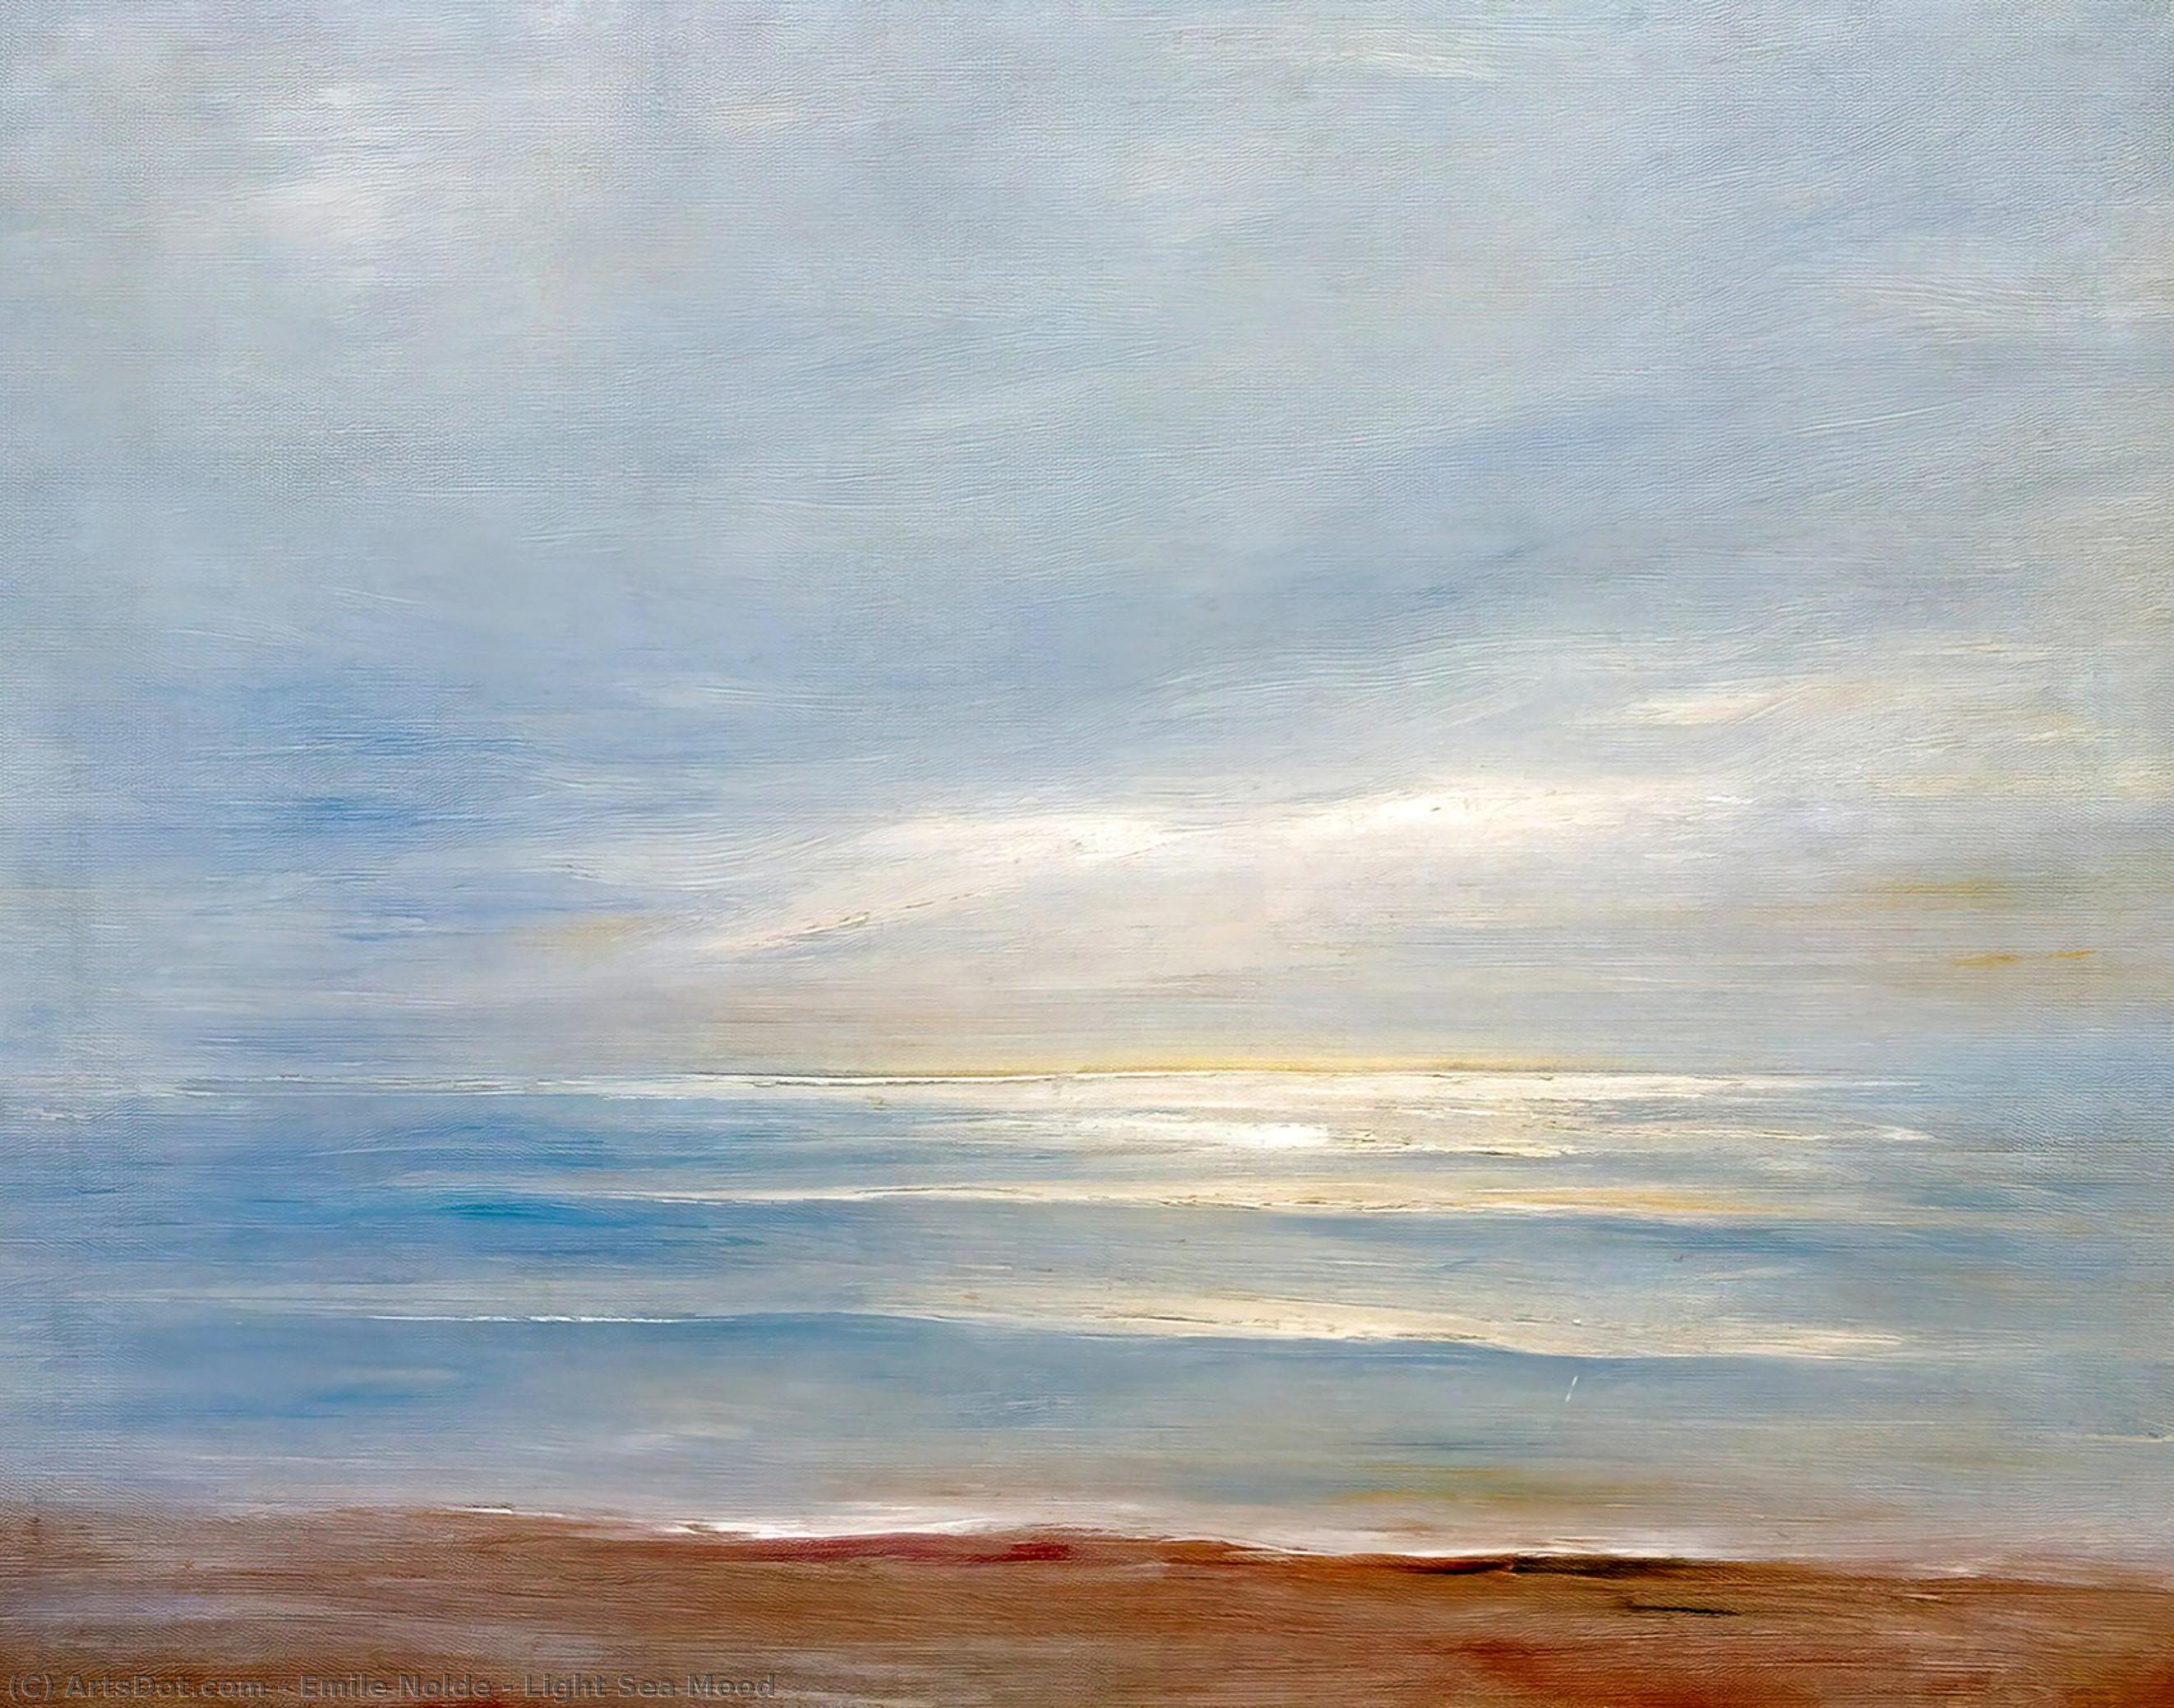 WikiOO.org - Encyclopedia of Fine Arts - Lukisan, Artwork Emile Nolde - Light Sea Mood